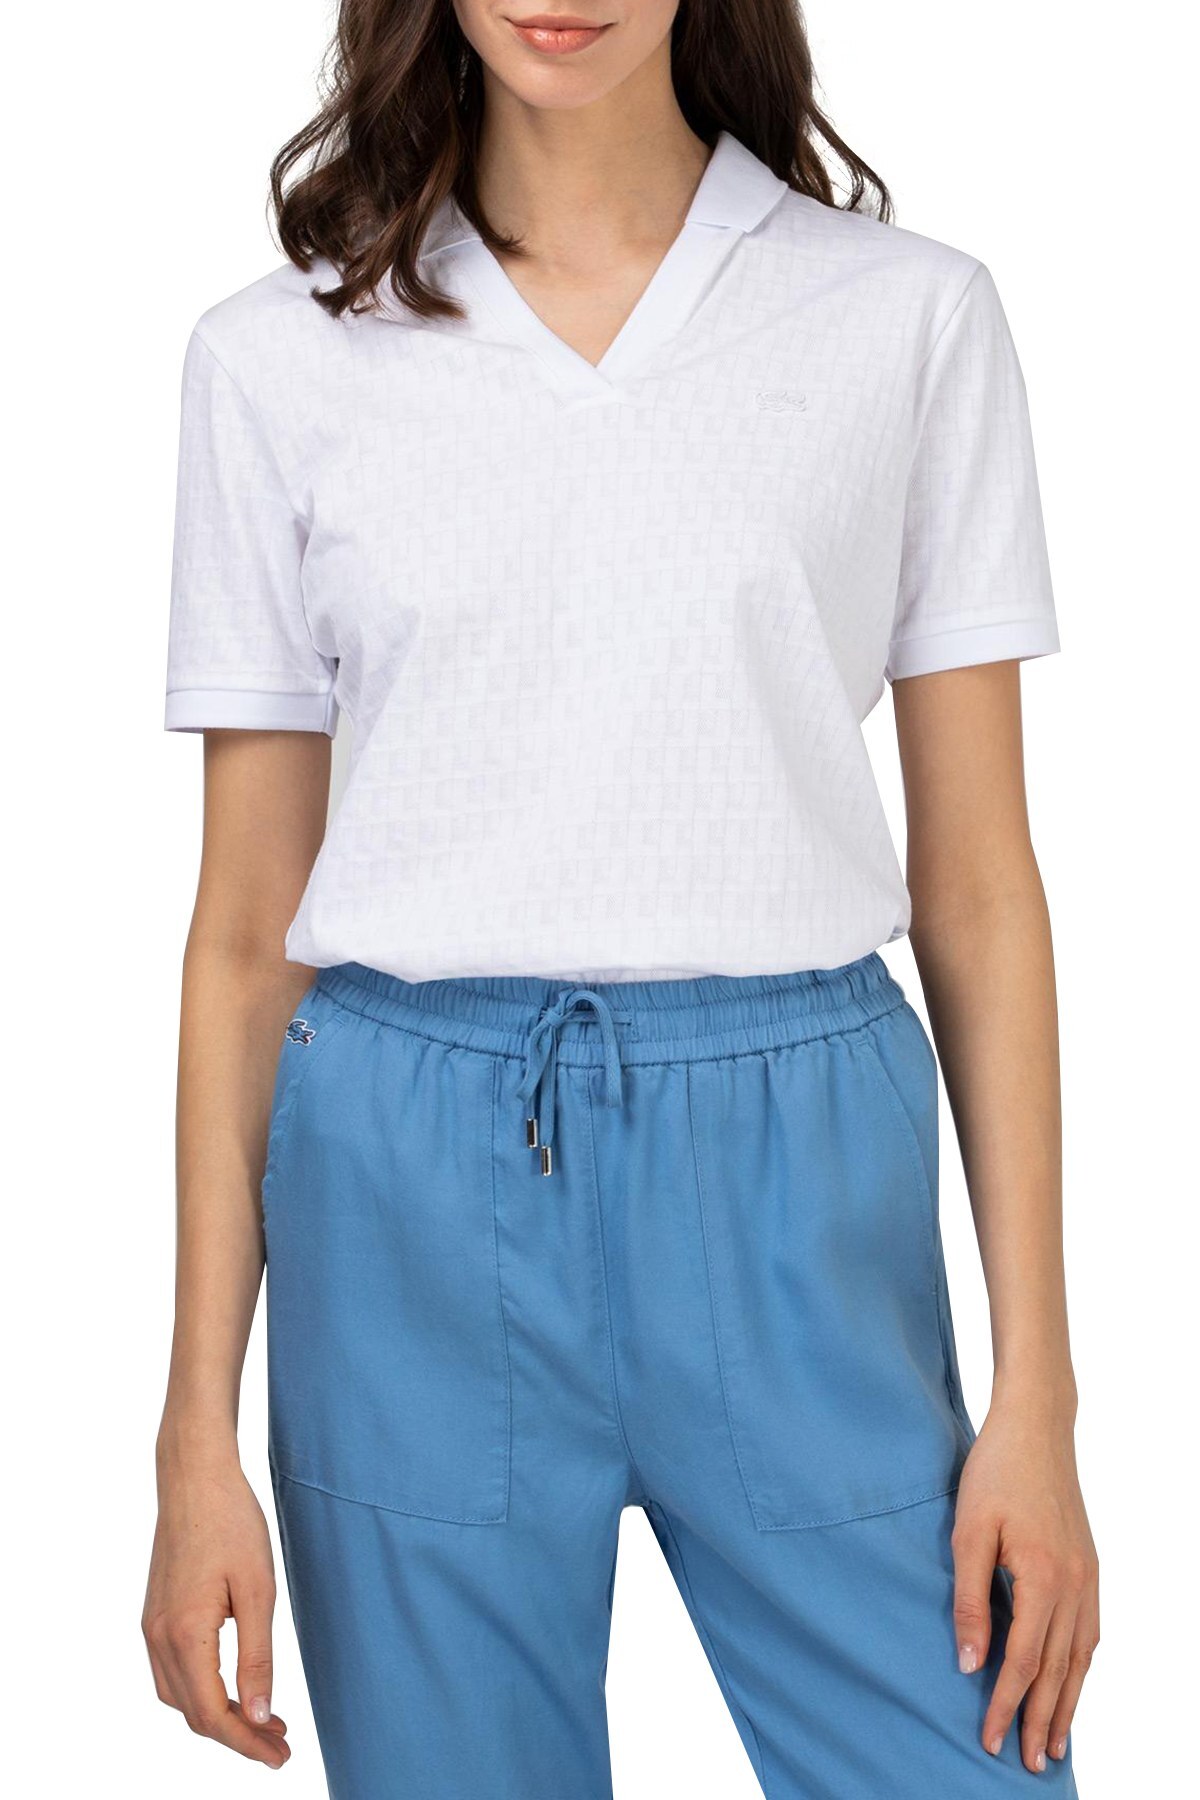 Lacoste Slim Fit Desenli T Shirt Bayan Polo PF0110 10B BEYAZ